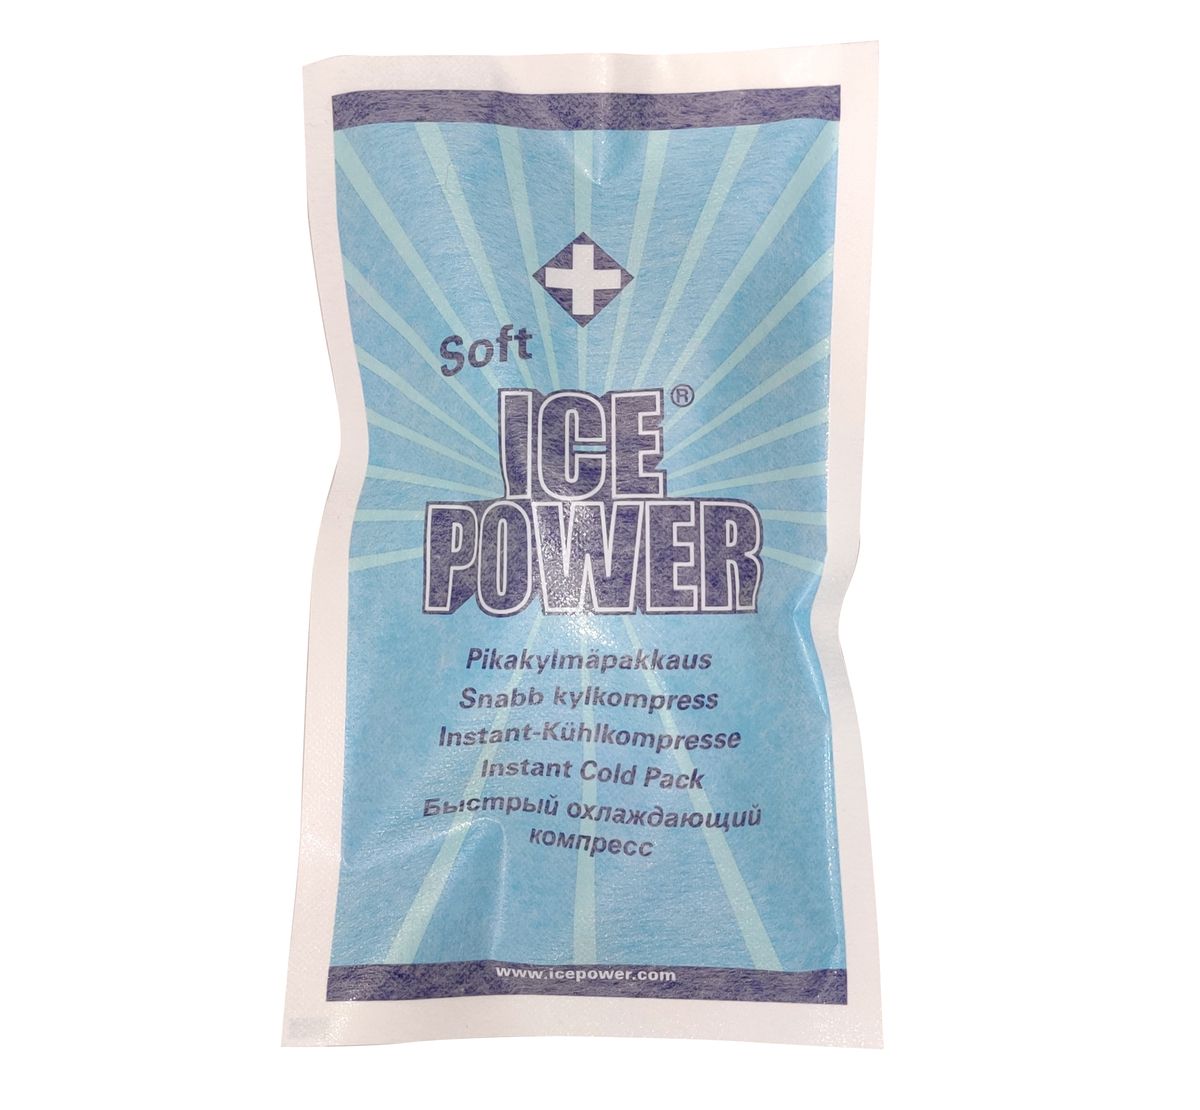 Køb Ice Power - billigt hos Med24.dk